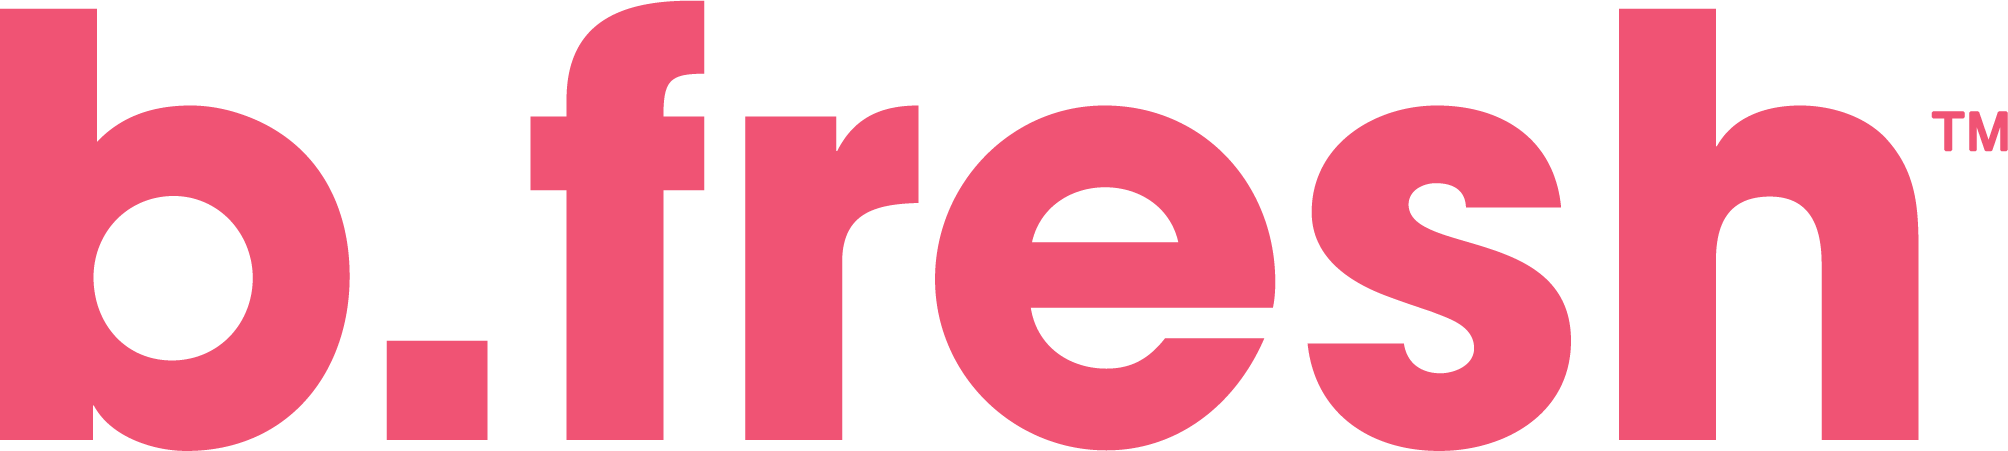 bfresh-Logo